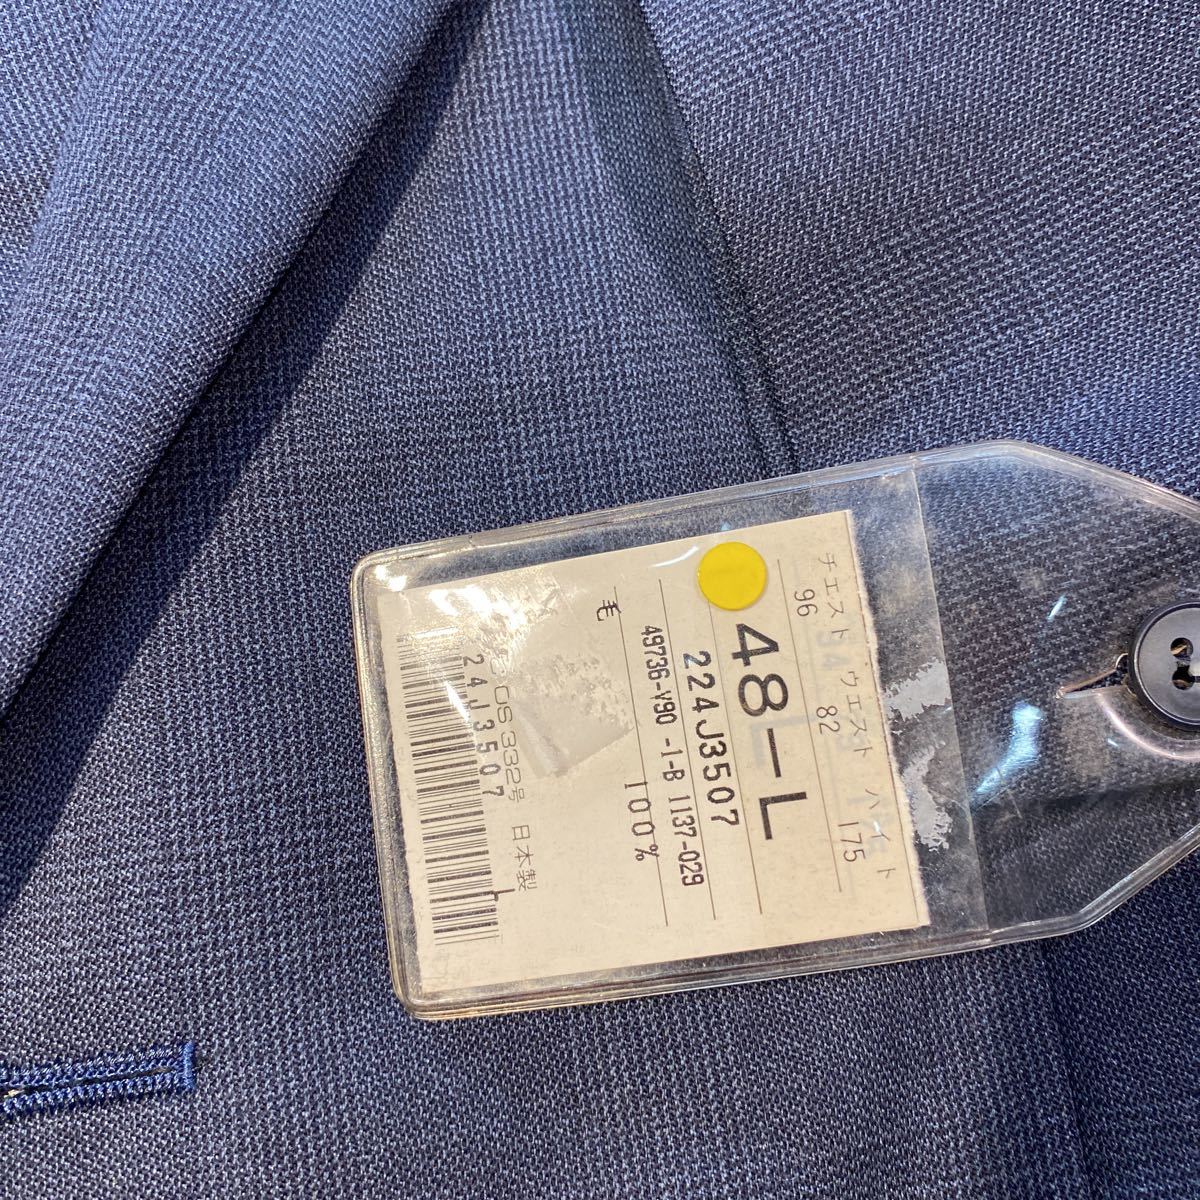 新品タグ付き高級VARIEビンテージ2つボタンテーラードジャケット サイズL 紺プルシャンブルー系シャドウグレンチェック柄日本製ウール100%_画像3